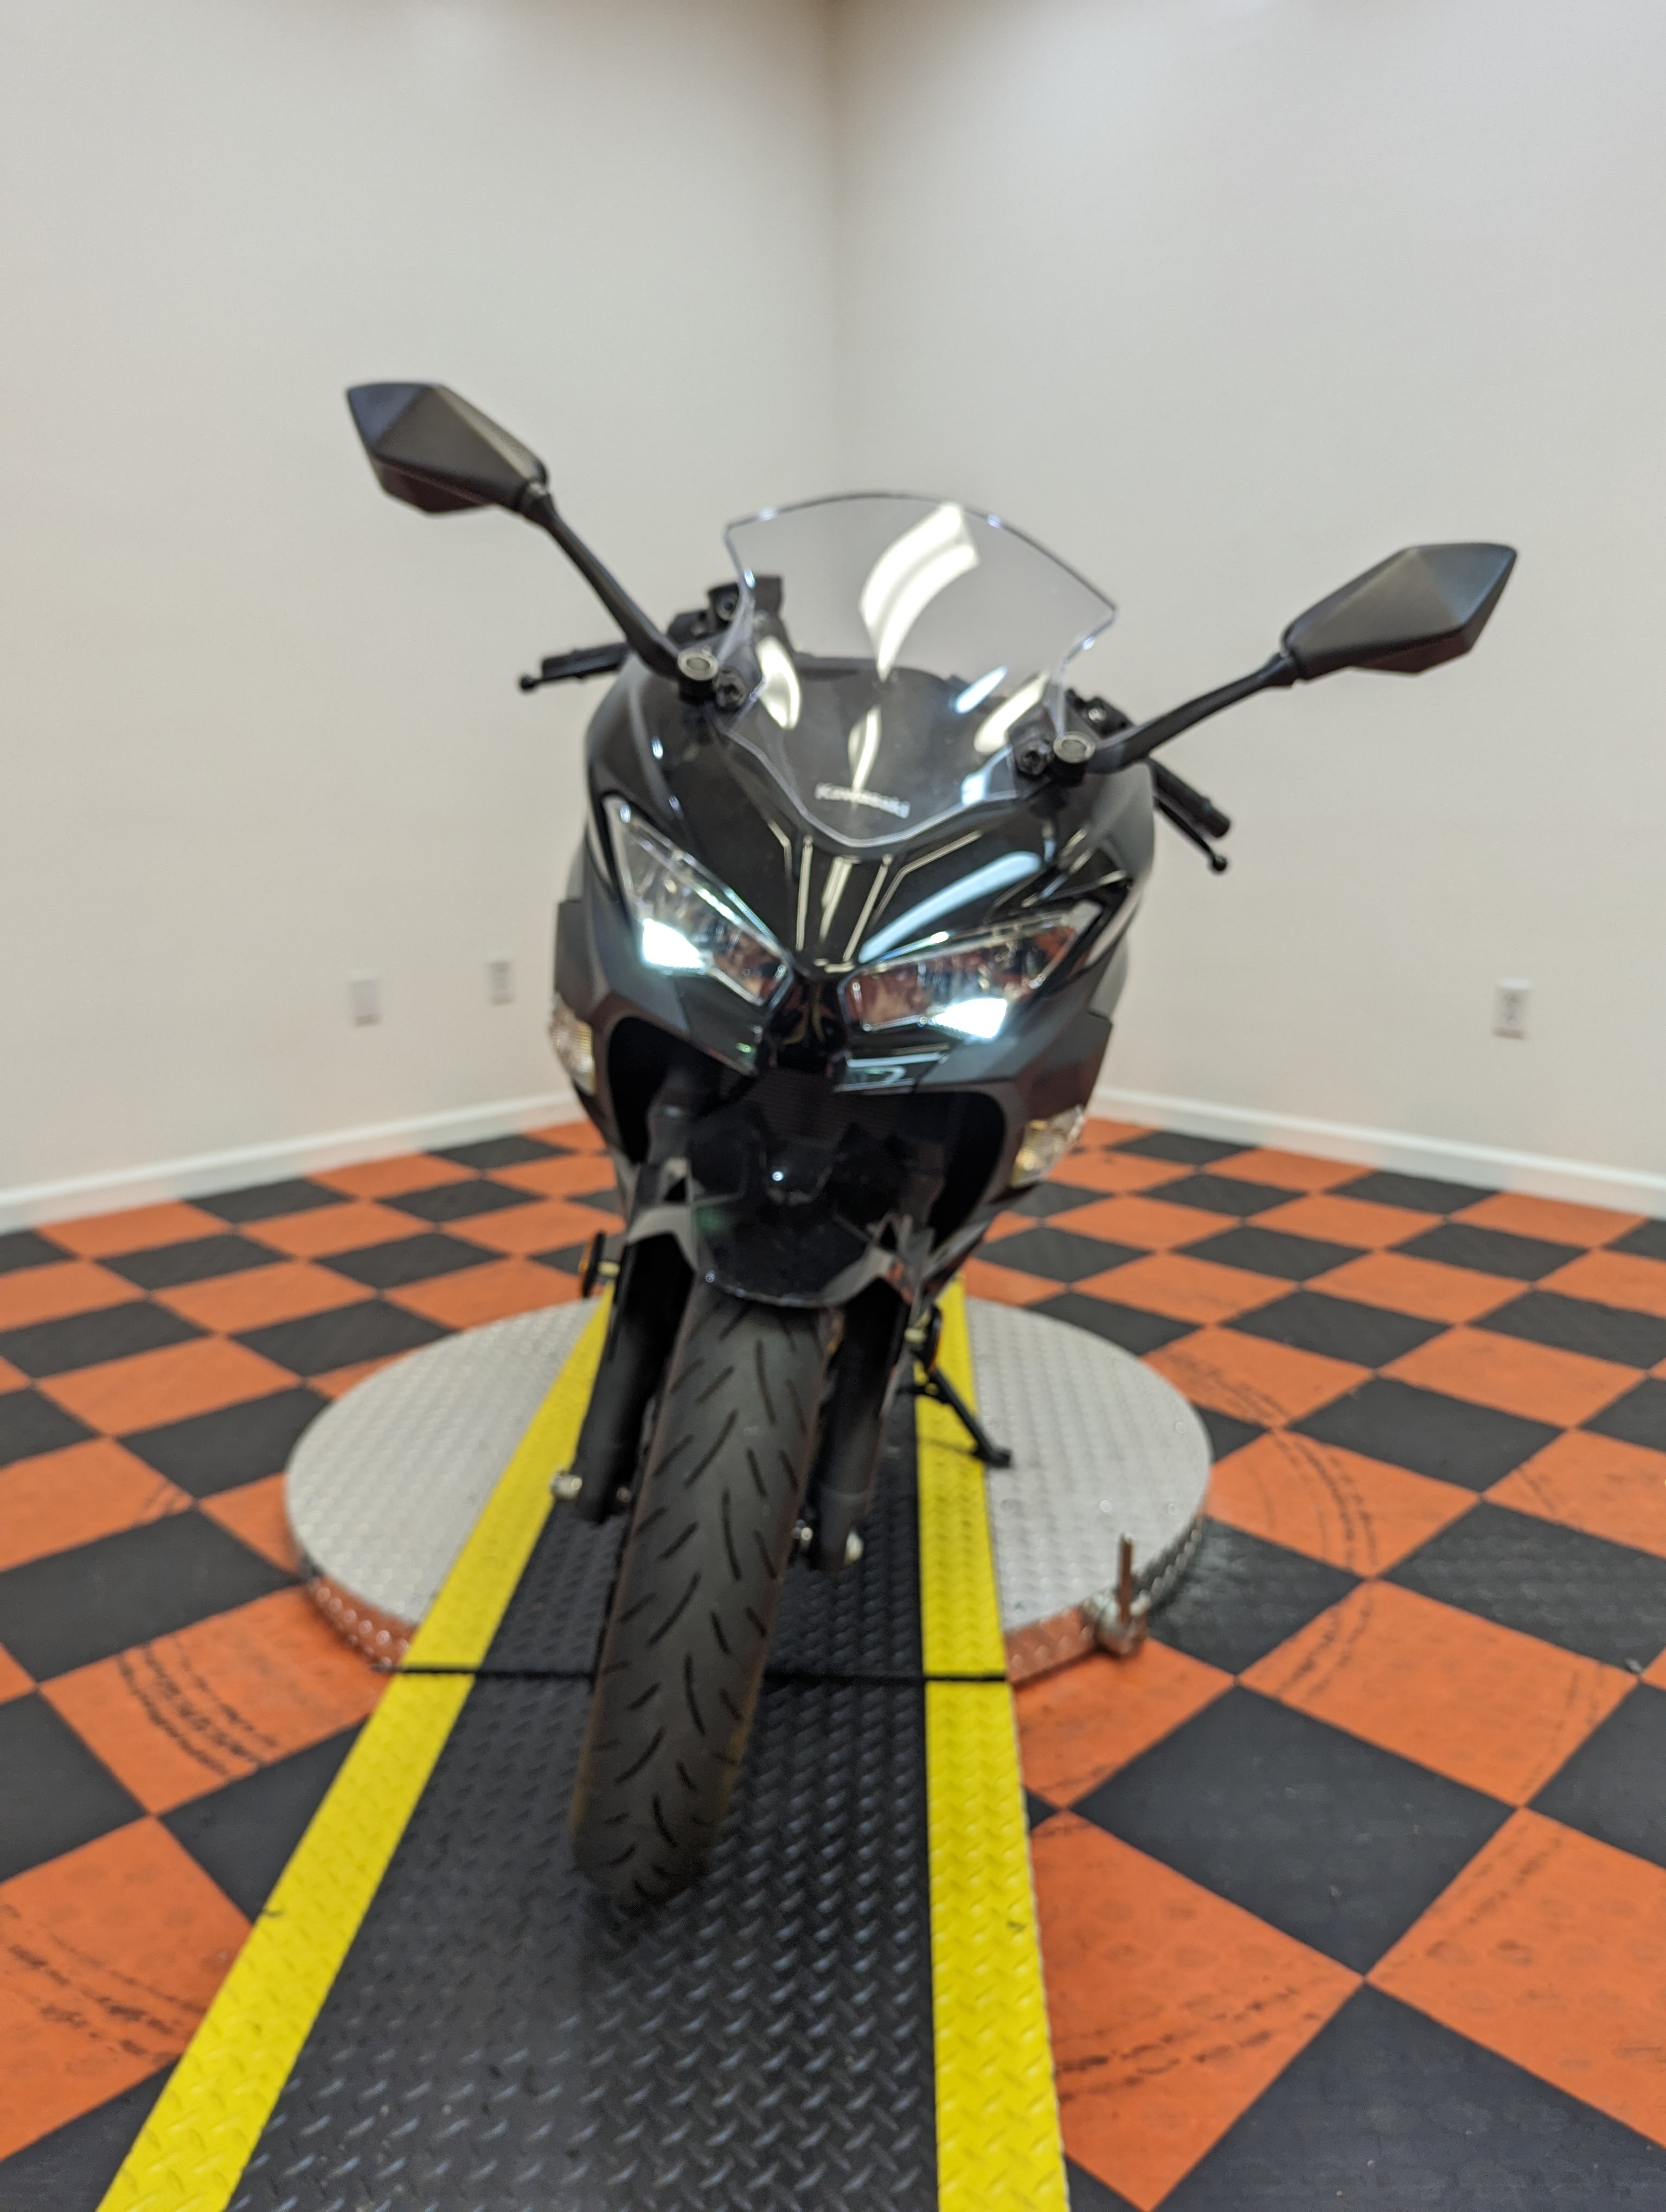 2019 Kawasaki Ninja 400 Base at Harley-Davidson of Indianapolis